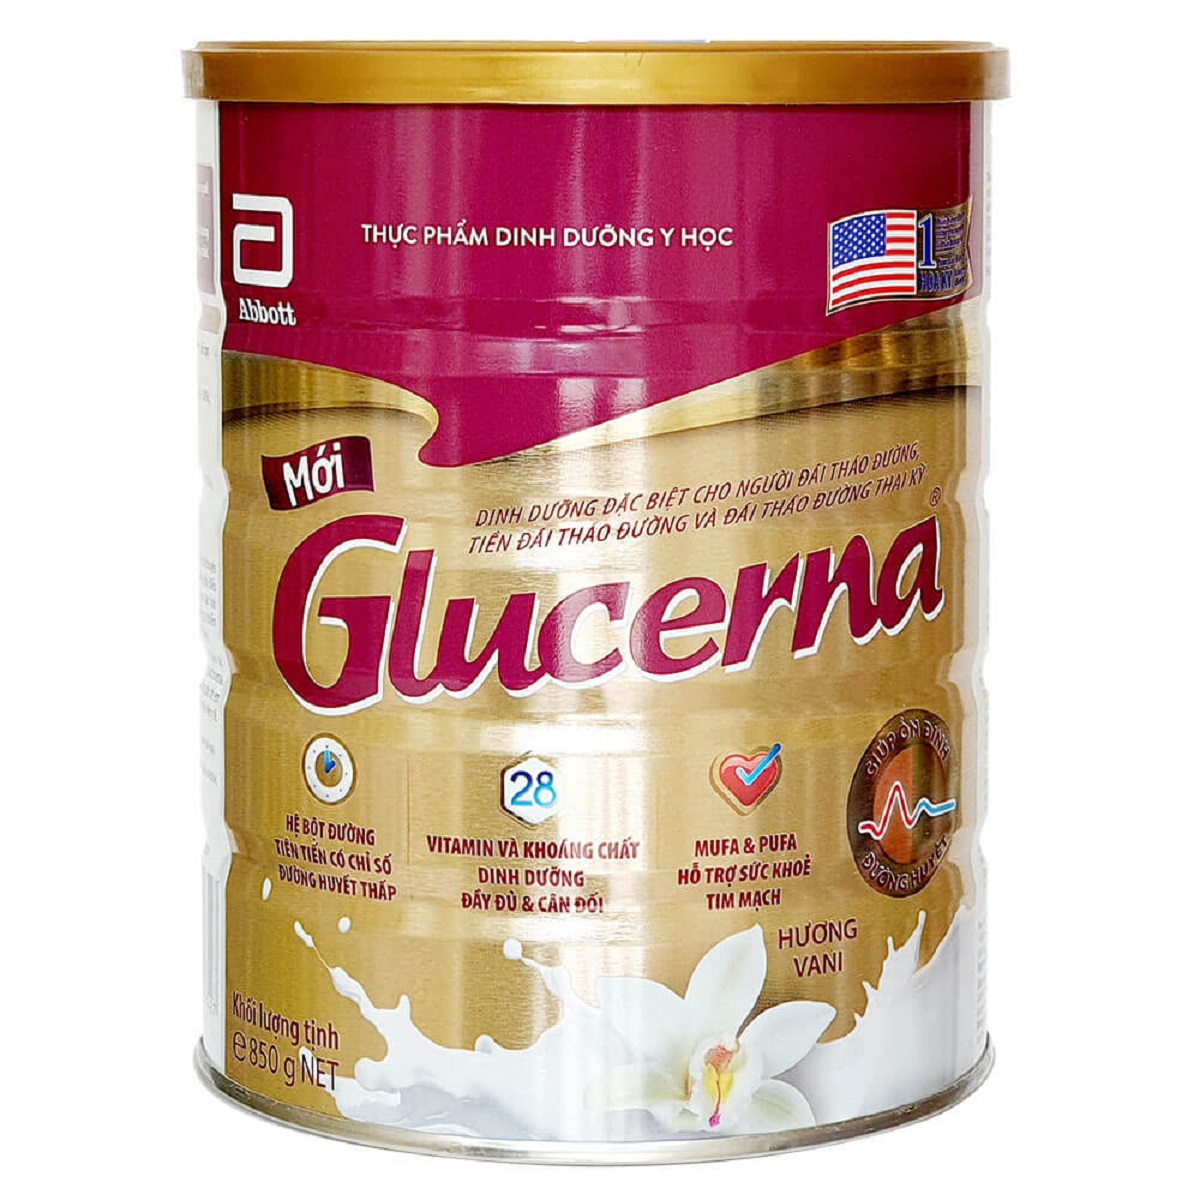 Sữa Glucerna có công dụng như thế nào với người bệnh tiểu đường?